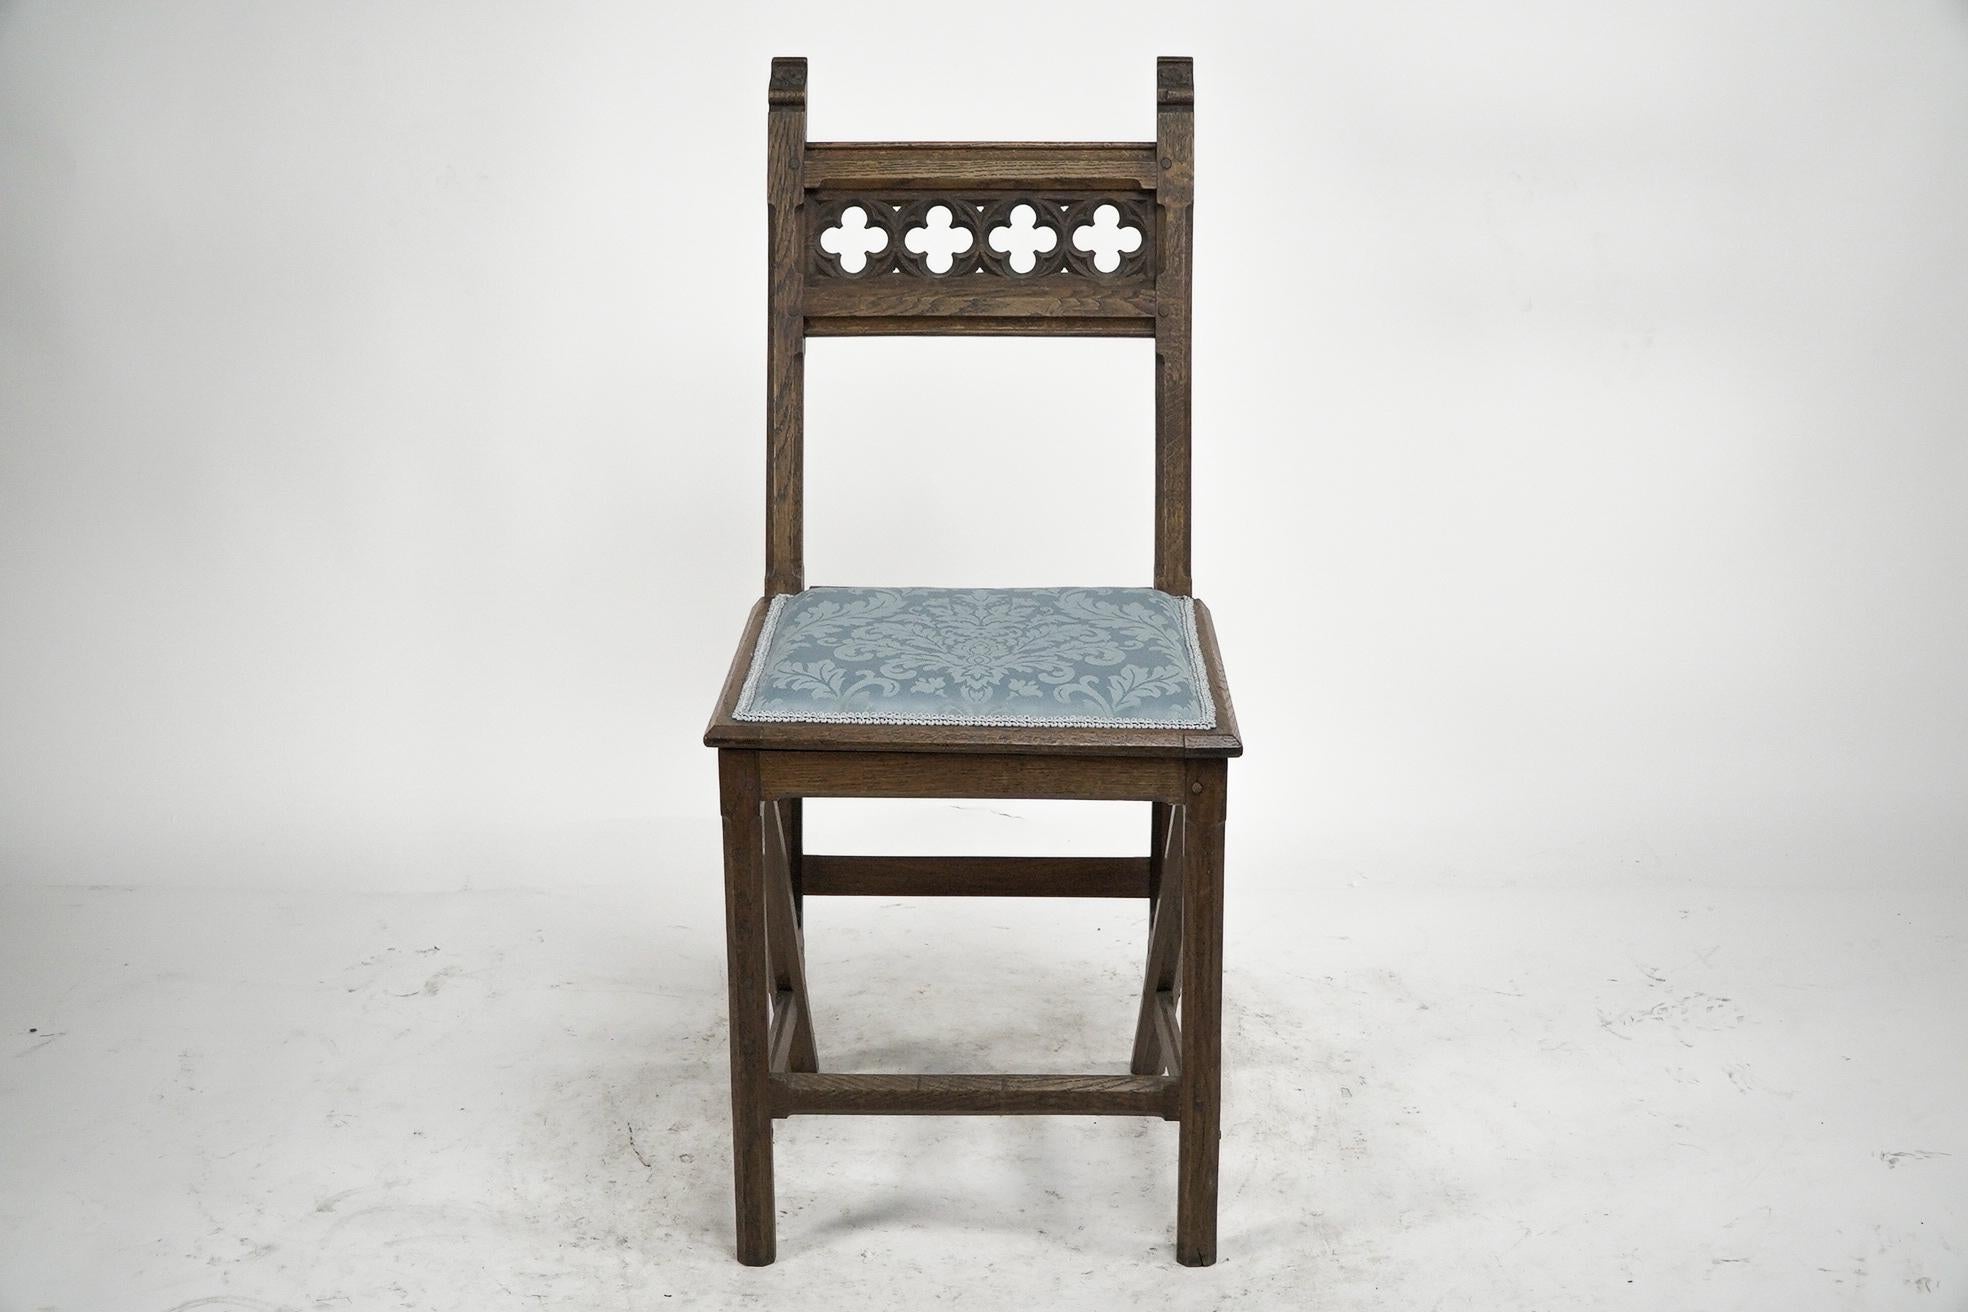 Hendrik Petrus Berlage Néerlandais. Un ensemble captivant de quatre chaises d'appoint en chêne de style néo-gothique, dont les pieds sont dotés d'un cadre en A à l'architecture progressive. Ces chaises rendent hommage à l'illustre période